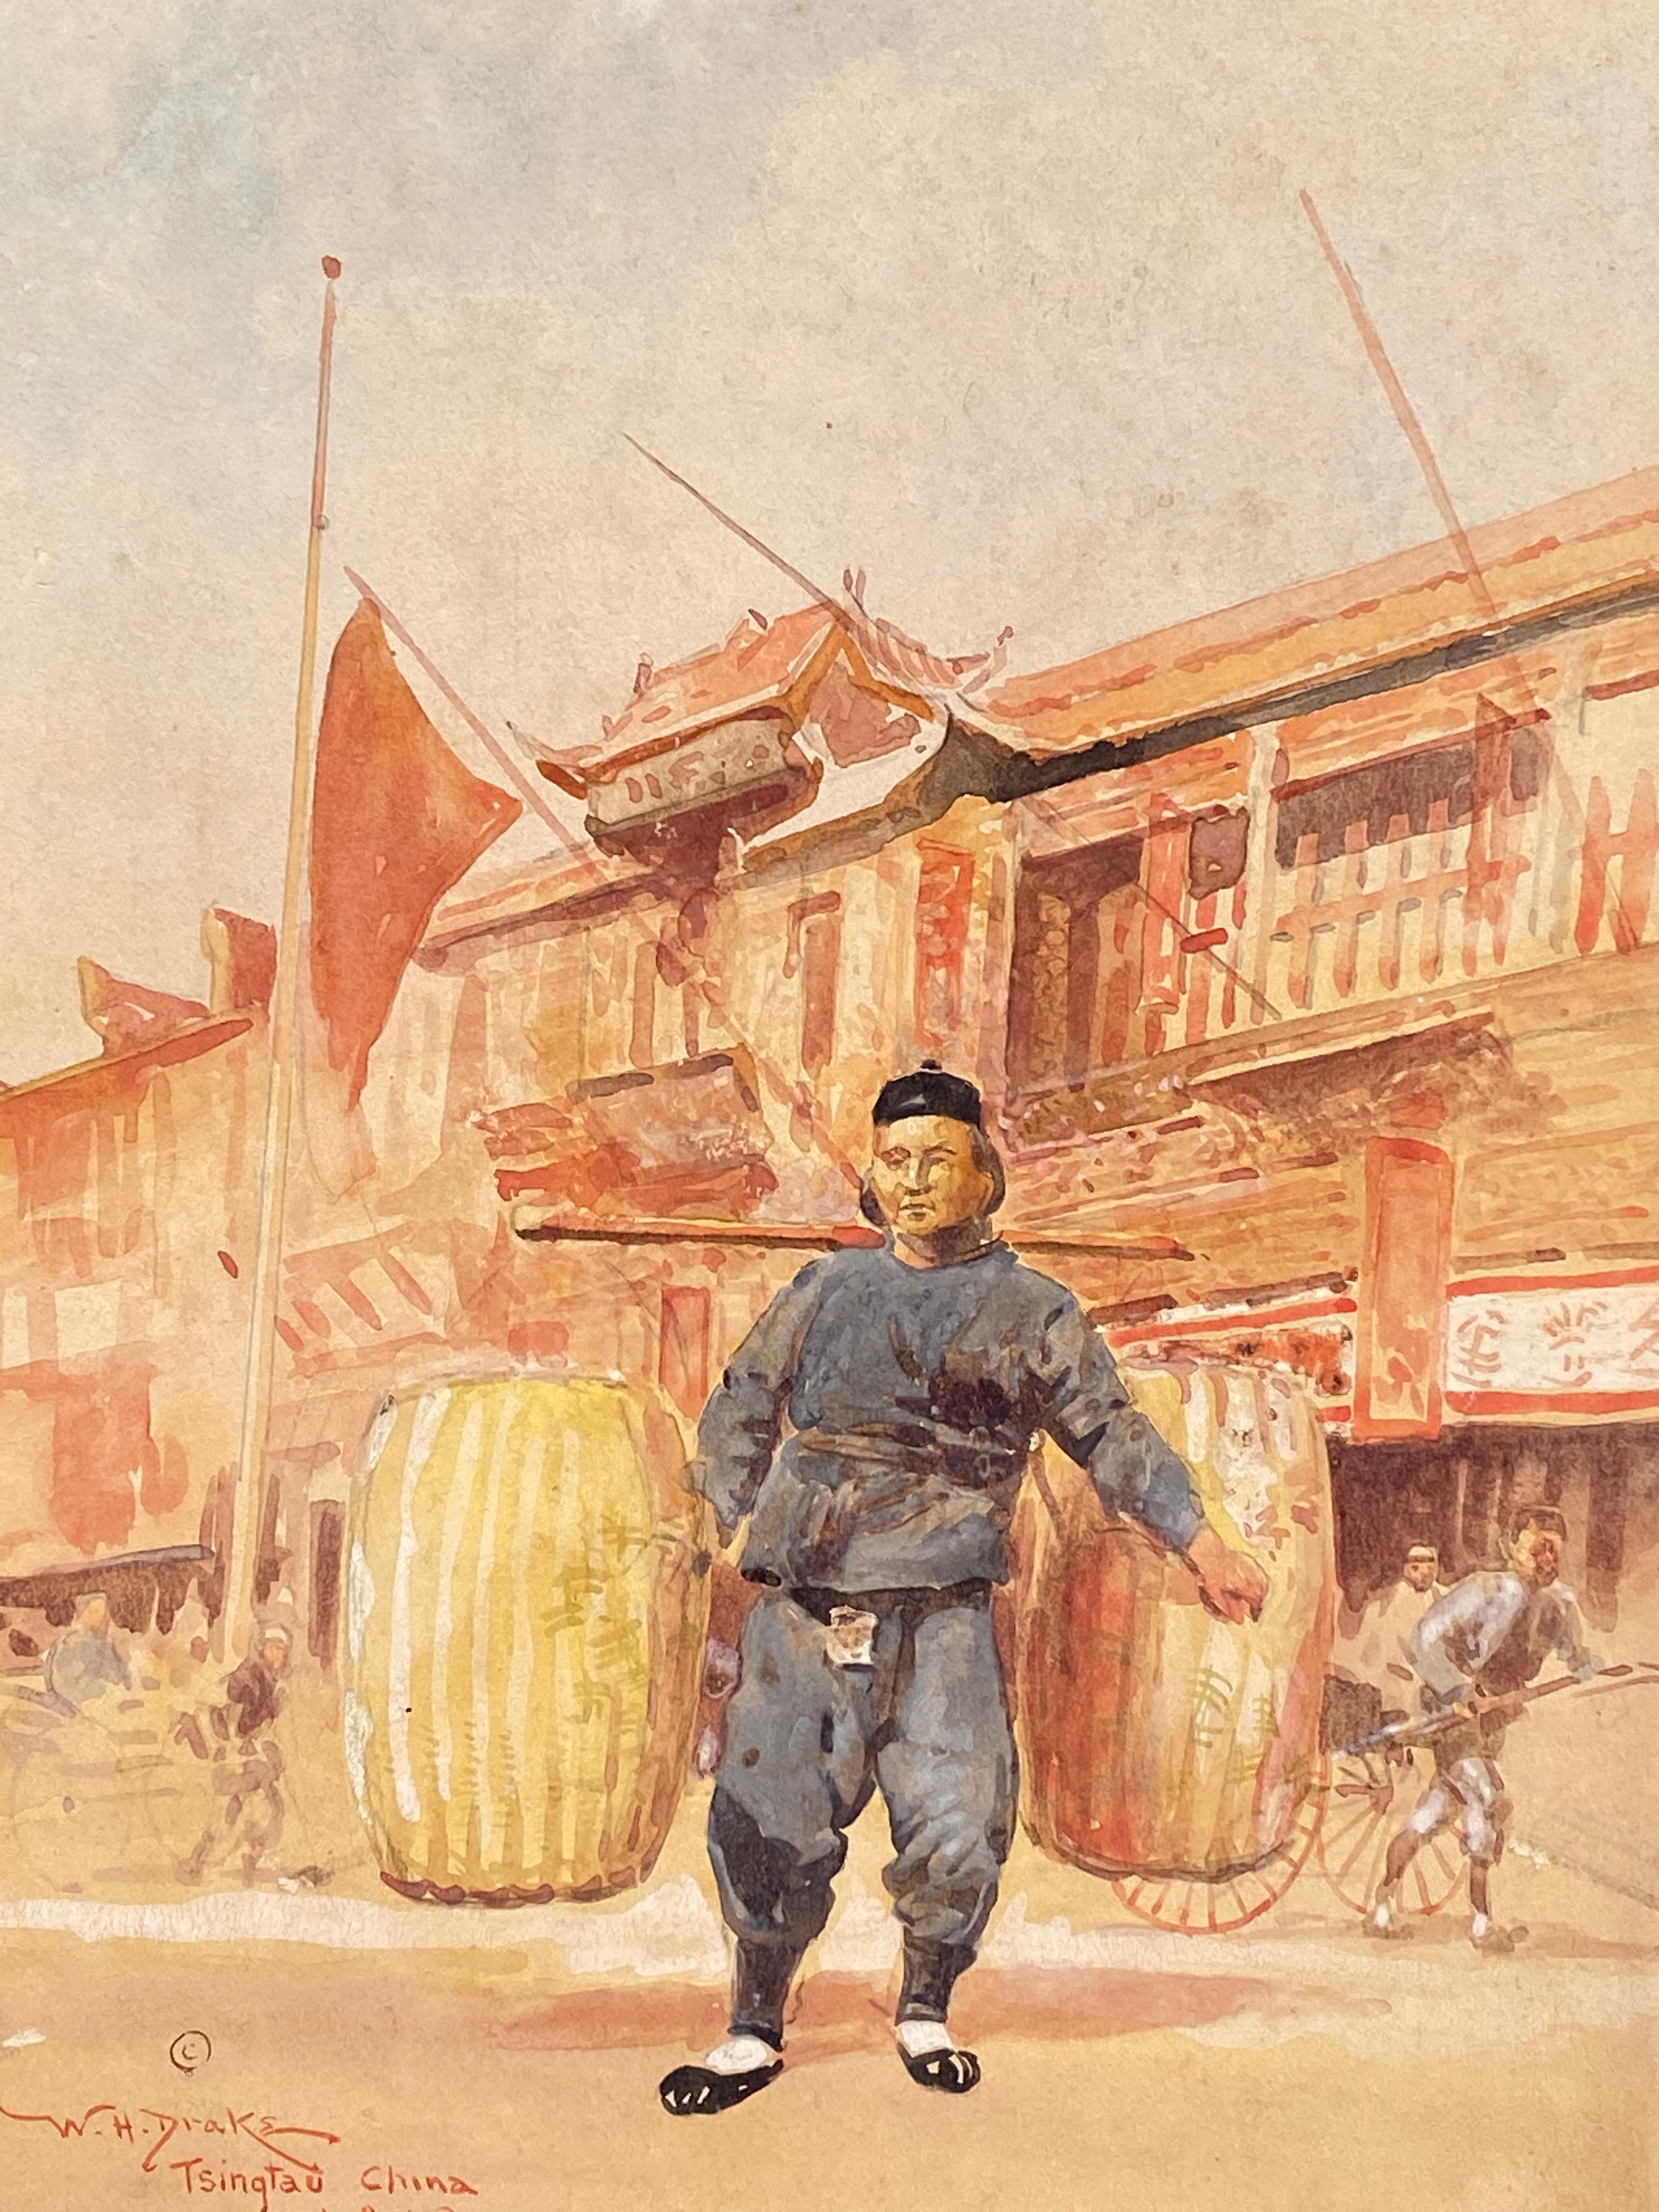 Tsingtao, China, 1912